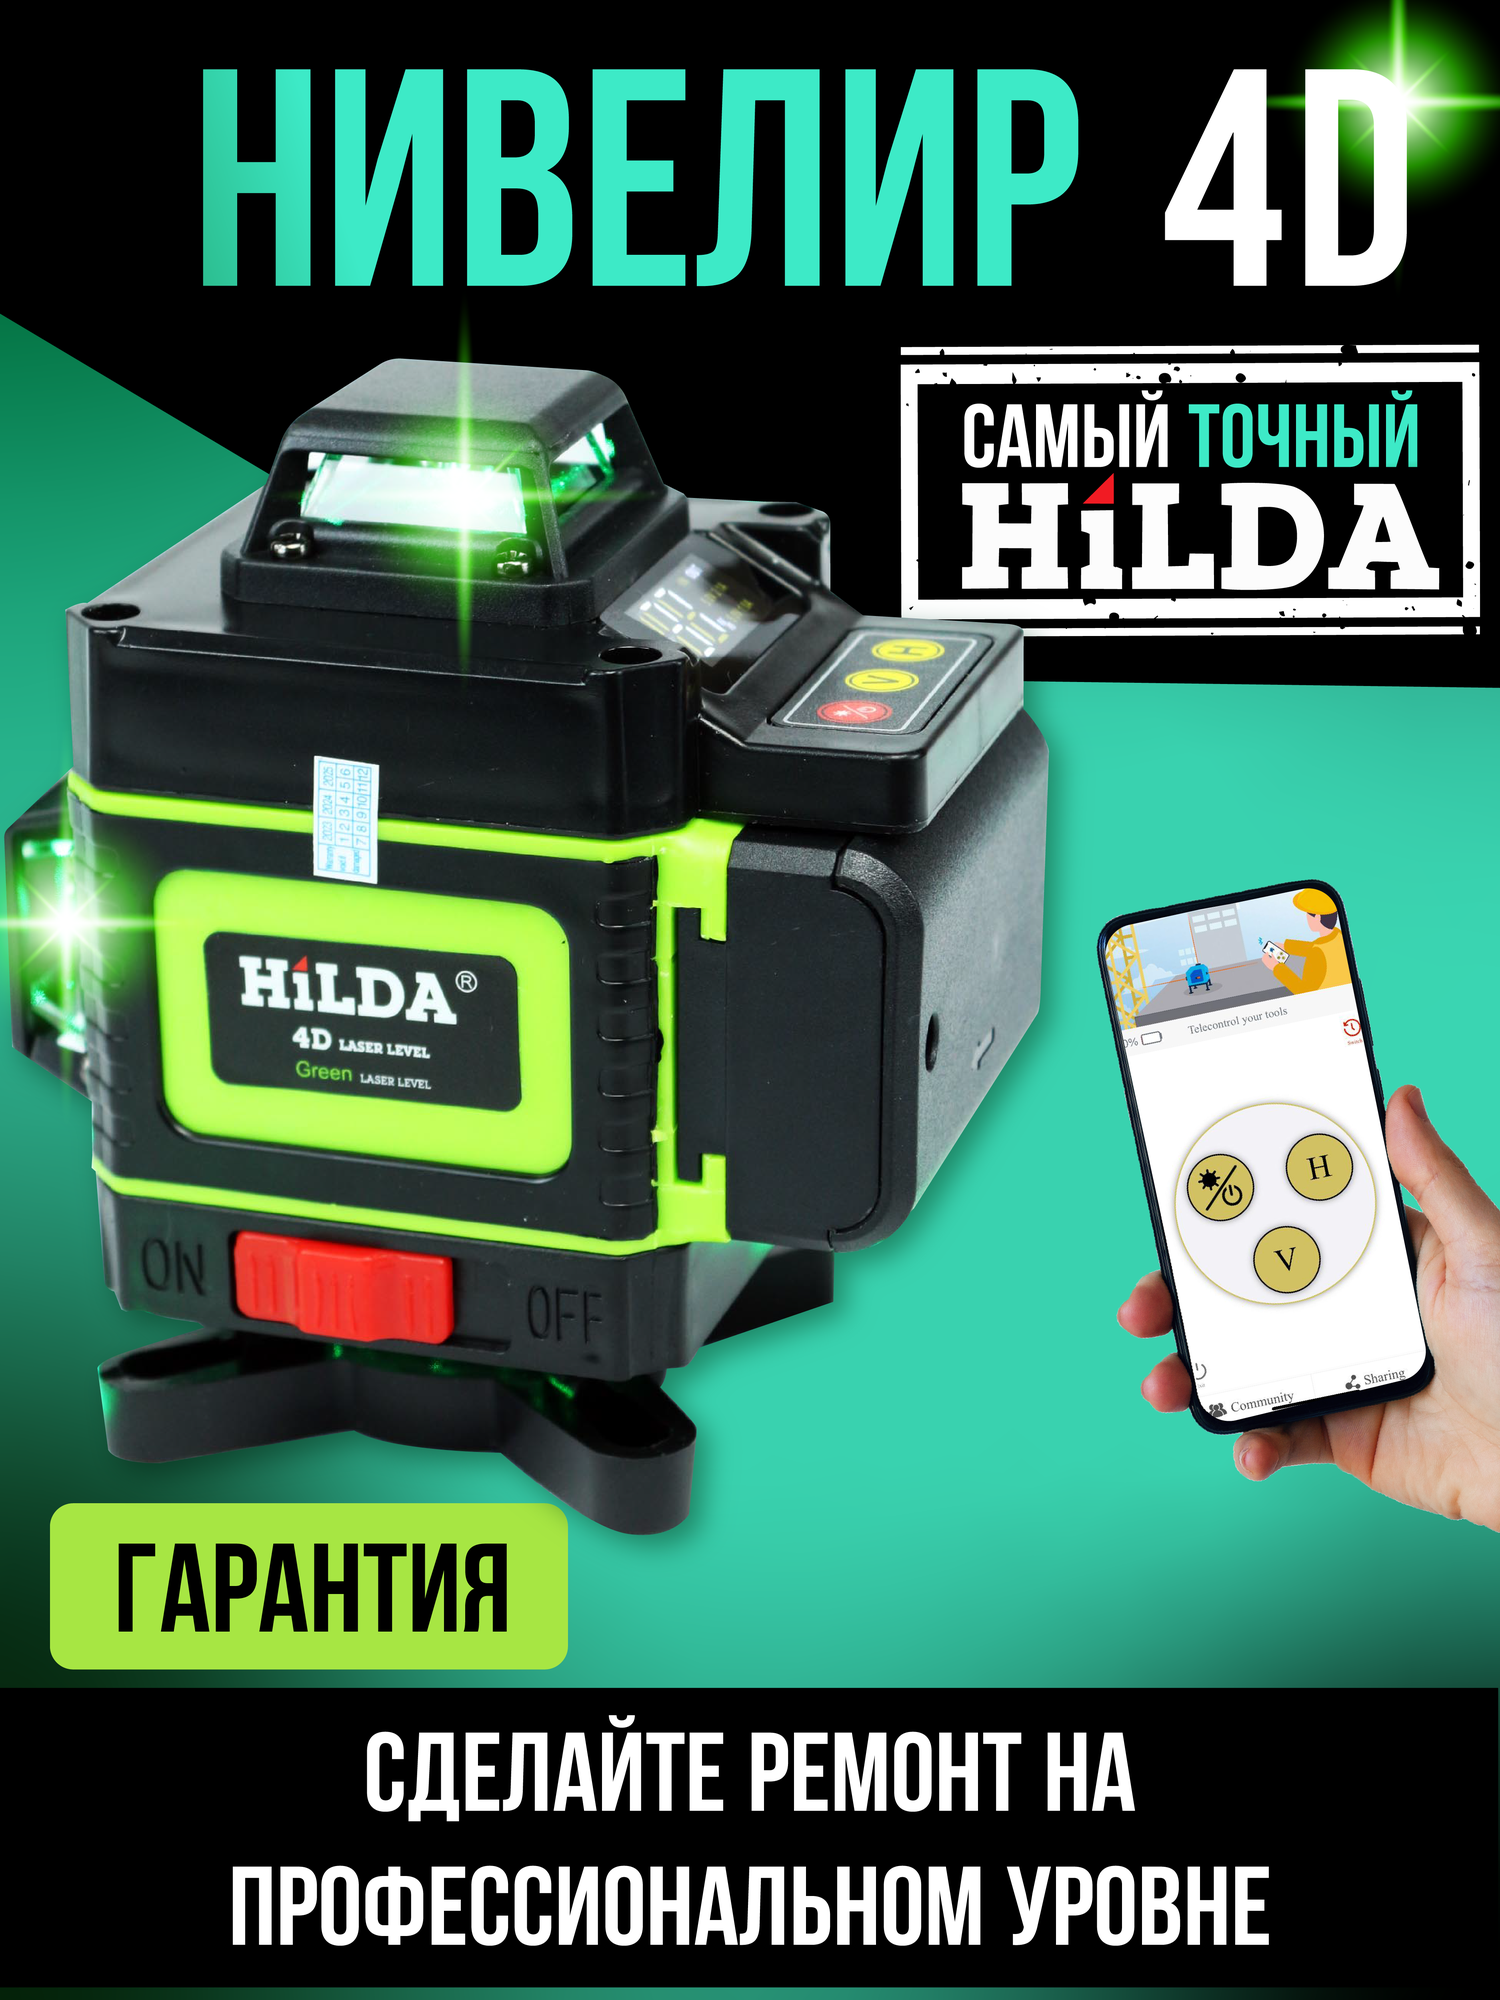 Профессиональный лазерный уровень нивелир Hilda 4D 36016 линий зелёный луч пульт. Откалиброван